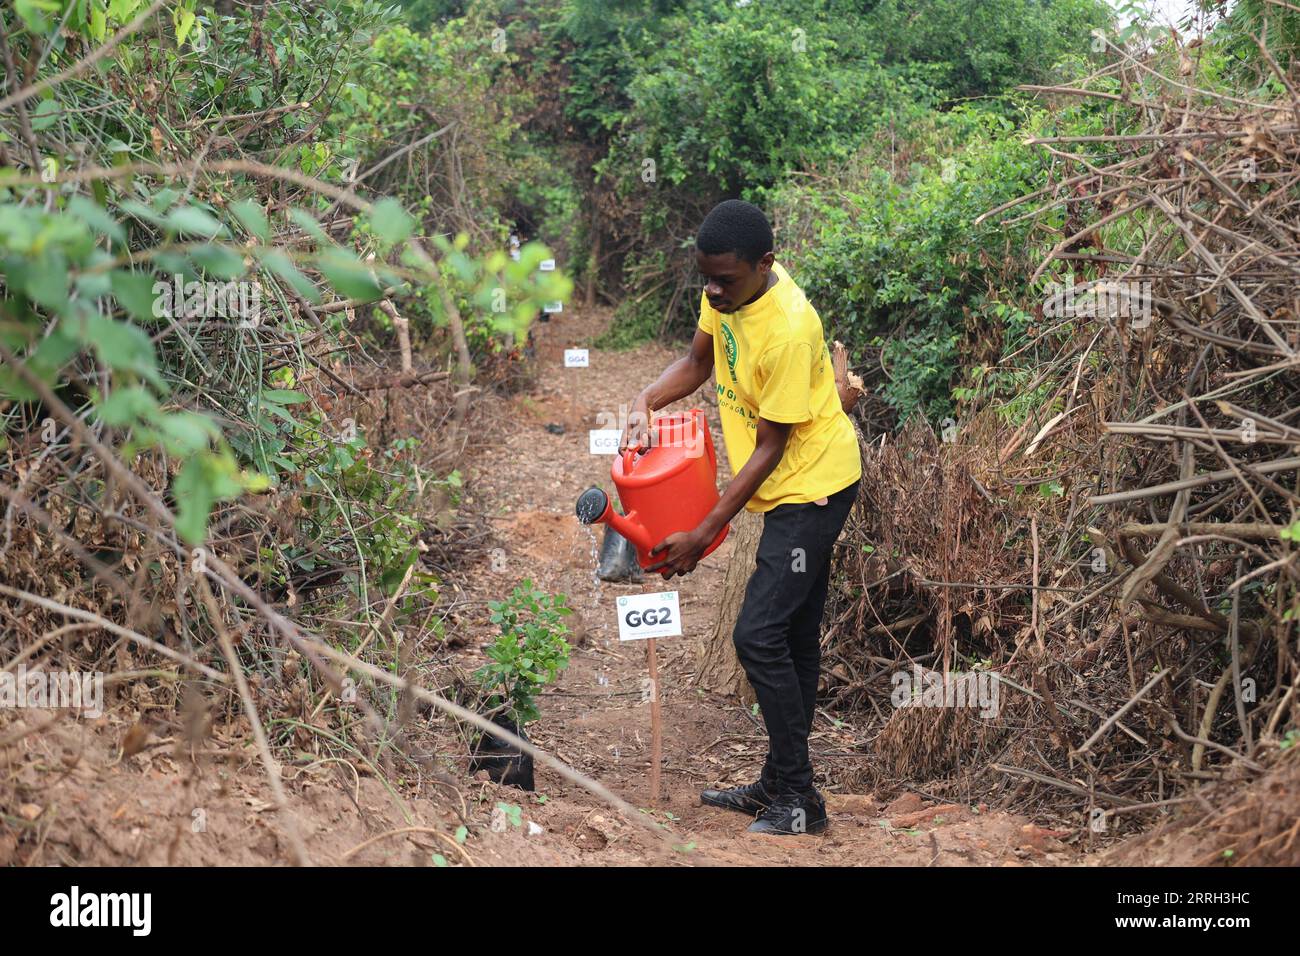 220611 -- ACCRA, le 11 juin 2022 -- Un volontaire arrose une plantule dans une forêt à Accra, Ghana, le 10 juin 2022. Vendredi, le gouvernement ghanéen a promis de planter au moins 20 millions d'arbres au cours de cette année pour restaurer les forêts à l'échelle nationale. Le président Nana Addo Dankwa Akufo-Addo a lancé cet appel lors d’une activité de plantation d’arbres dans la capitale pour commémorer la deuxième Journée verte du Ghana. Photo par / Xinhua GHANA-ACCRA-FOREST-RESTORATION CN Seth PUBLICATIONxNOTxINxCHN Banque D'Images